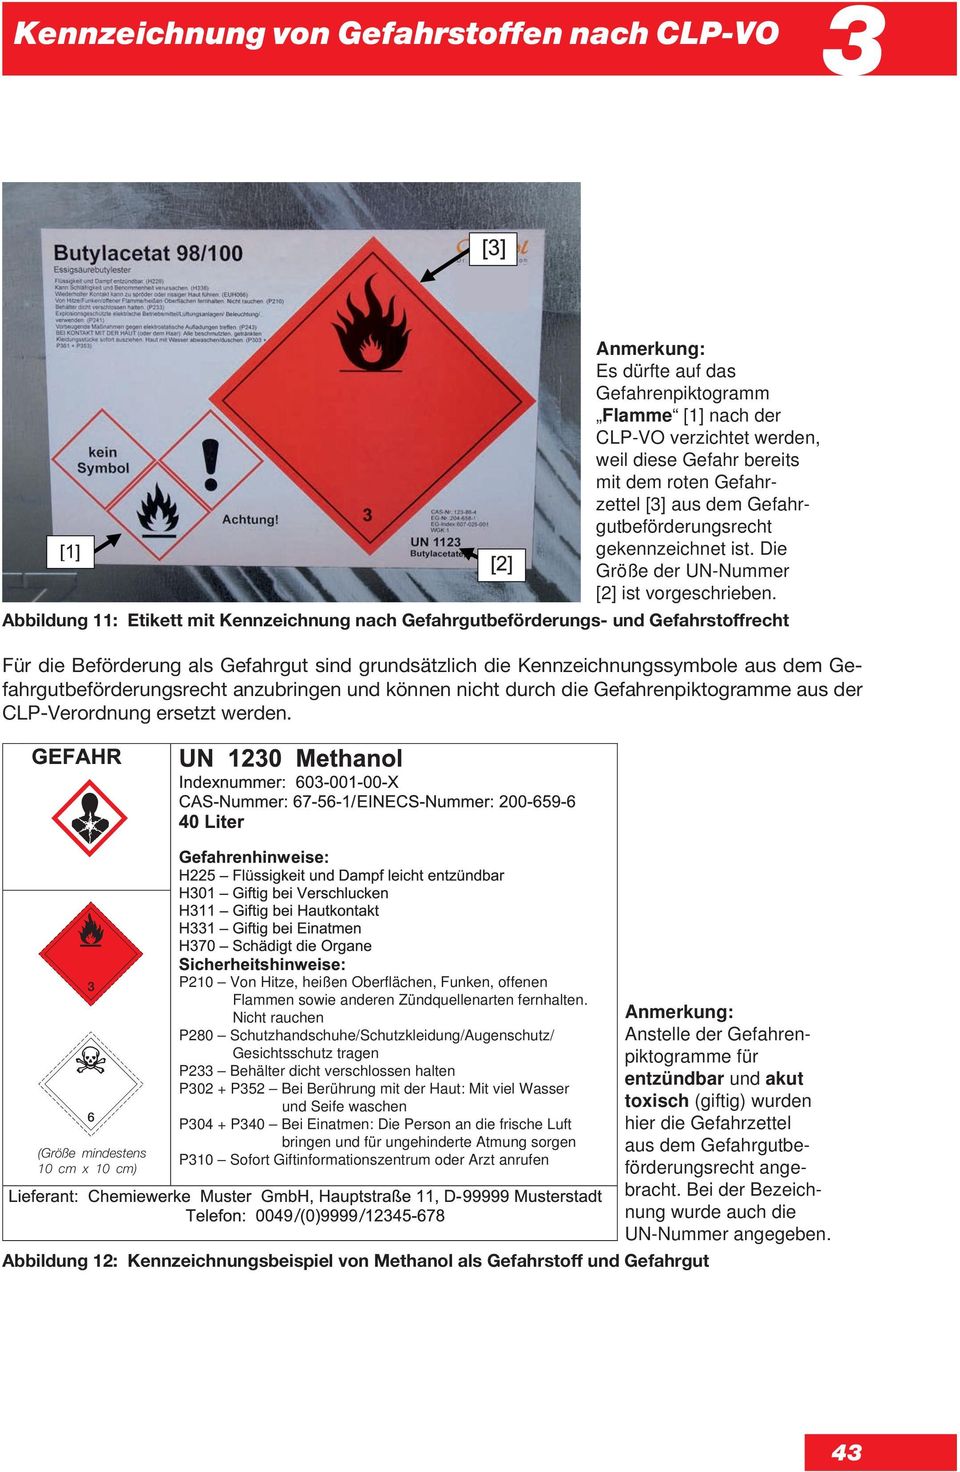 Abbildung 11: Etikett mit Kennzeichnung nach Gefahrgutbeförderungs- und Gefahrstoffrecht Für die Beförderung als Gefahrgut sind grundsätzlich die Kennzeichnungssymbole aus dem